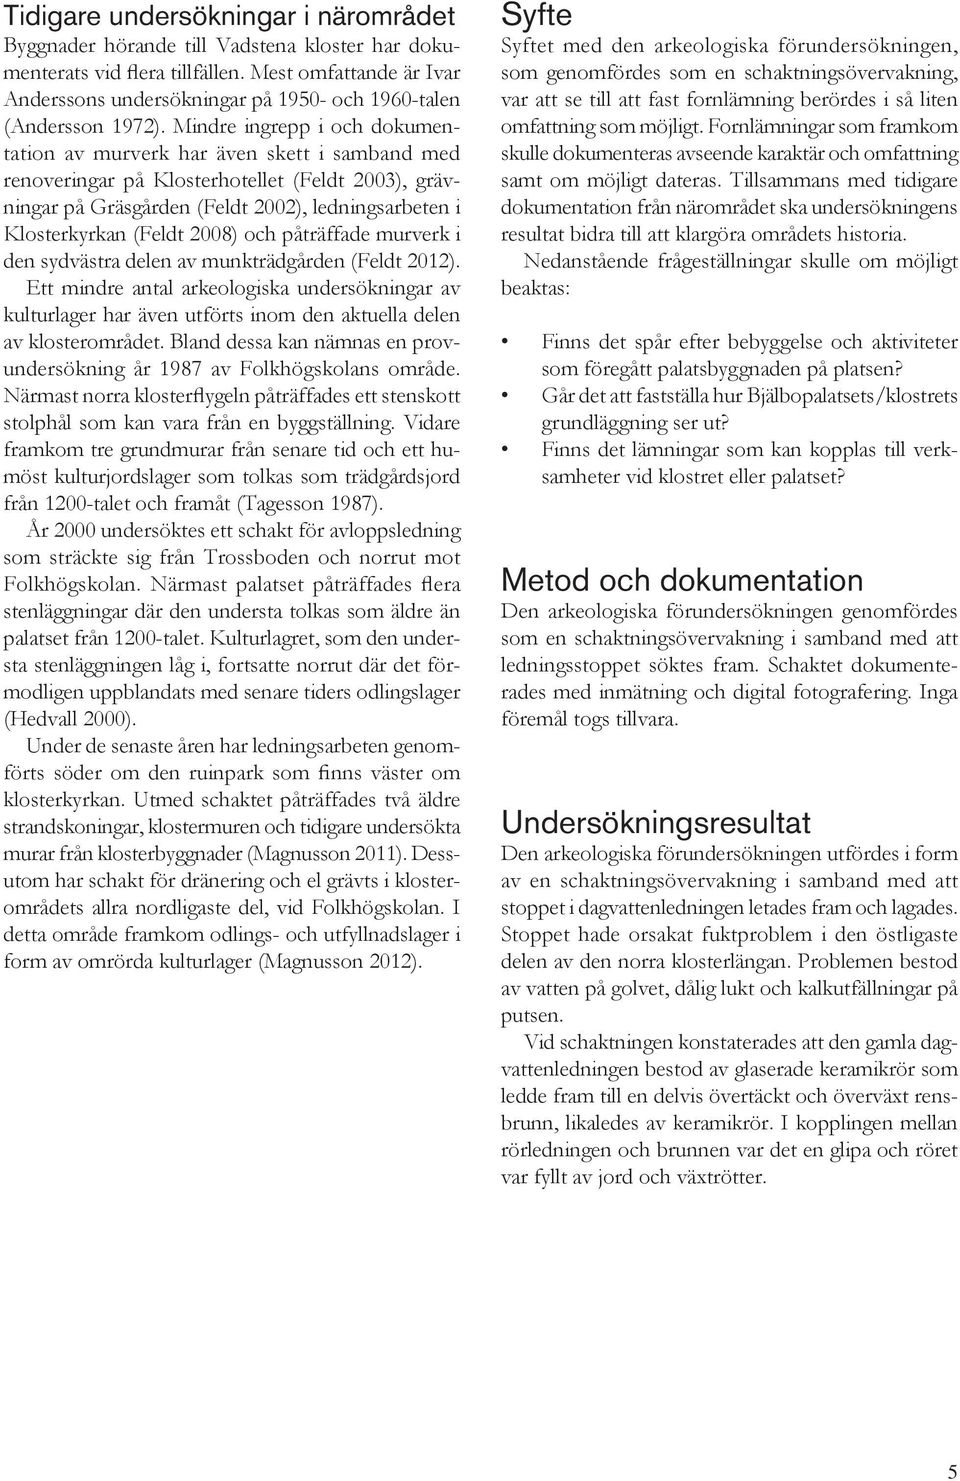 Mindre ingrepp i och dokumentation av murverk har även skett i samband med renoveringar på Klosterhotellet (Feldt 2003), grävningar på Gräsgården (Feldt 2002), ledningsarbeten i Klosterkyrkan (Feldt